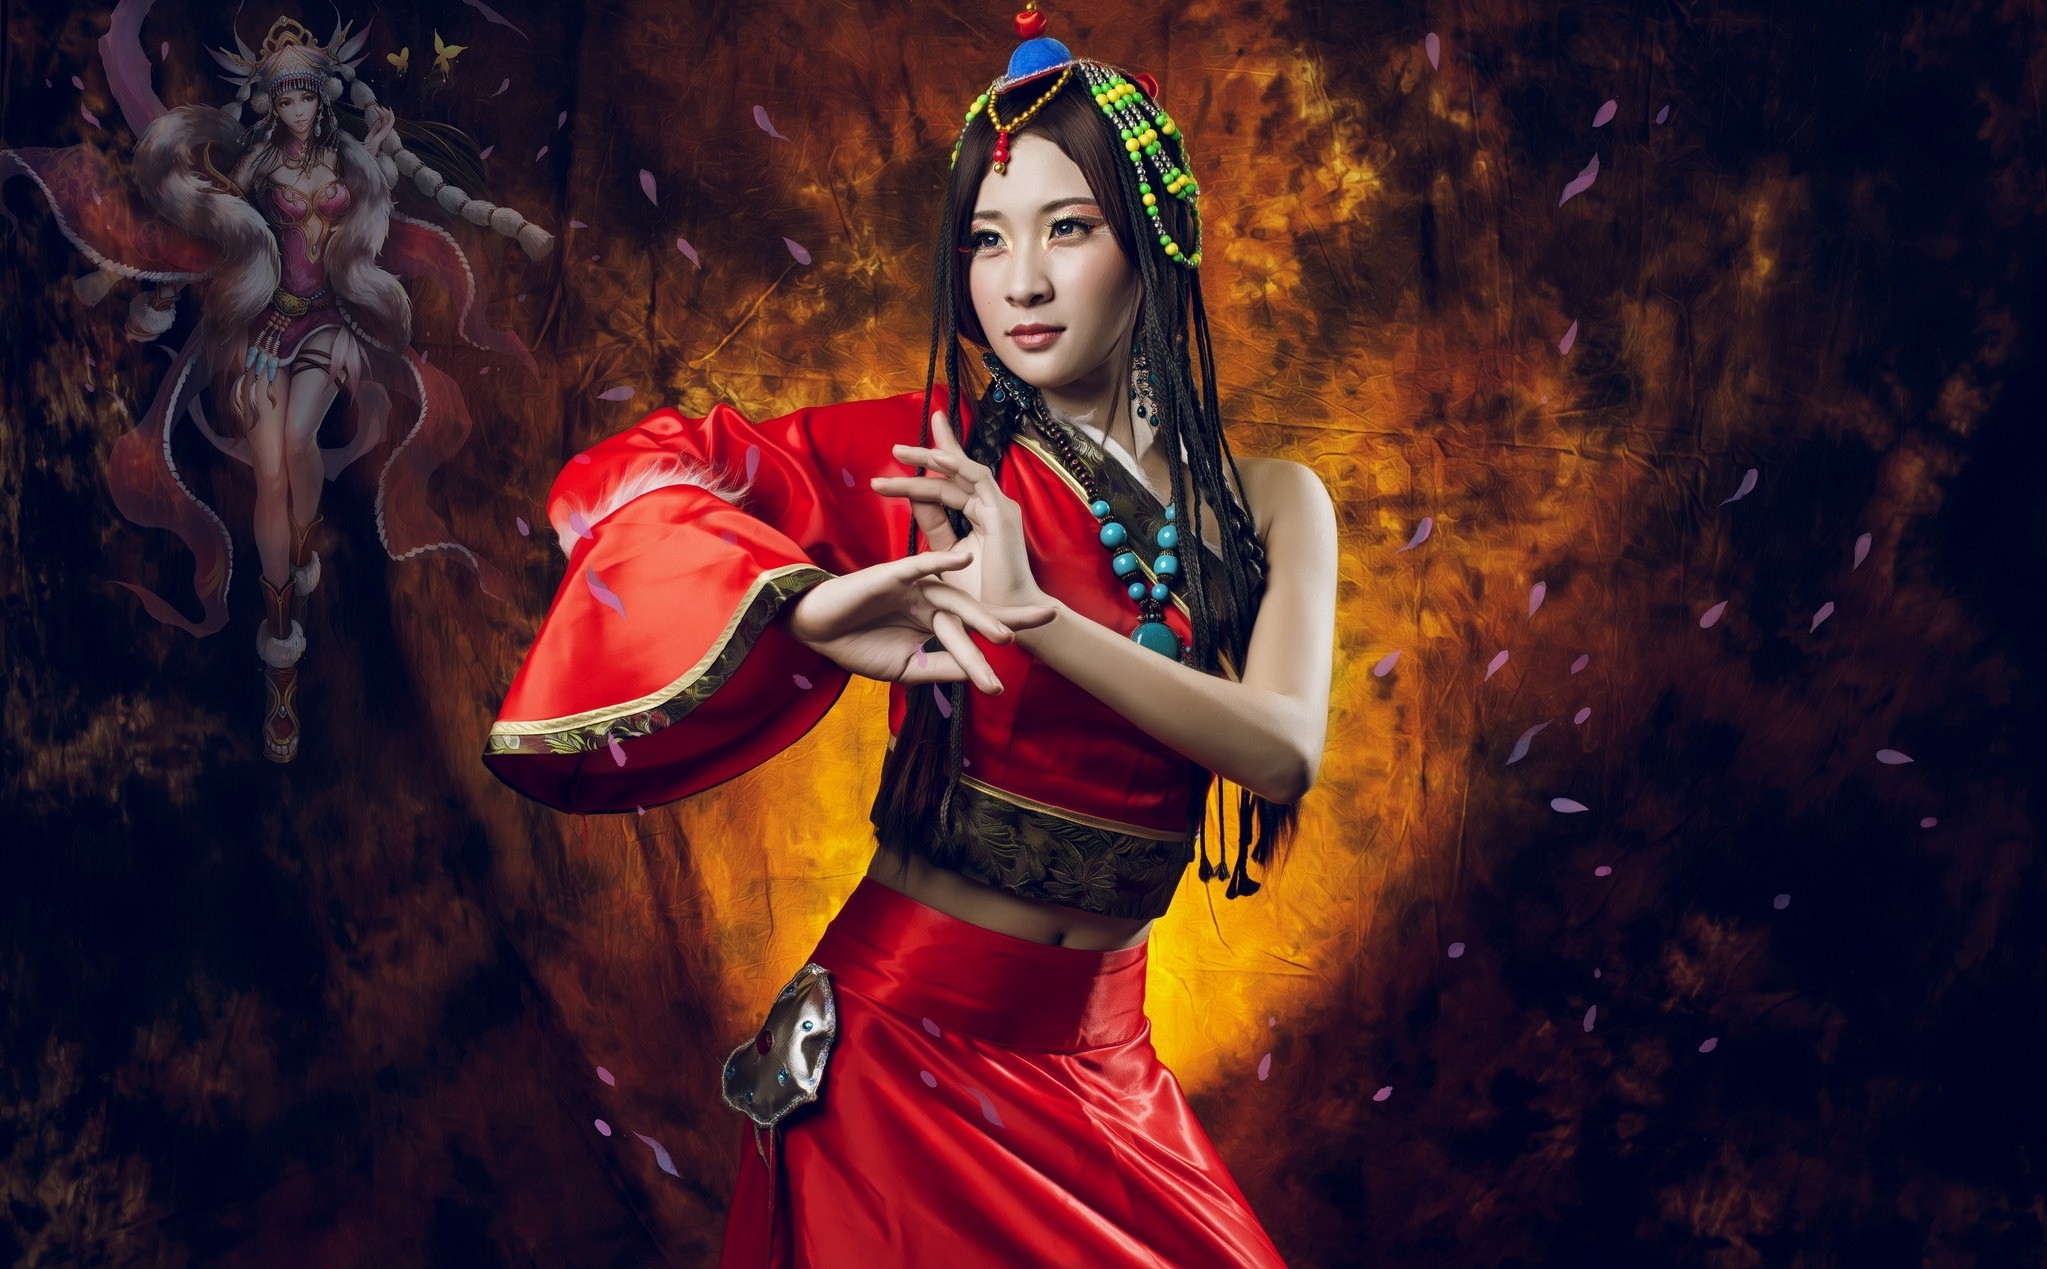 Asian Women Model Fantasy Art Wallpapers Hd Desktop